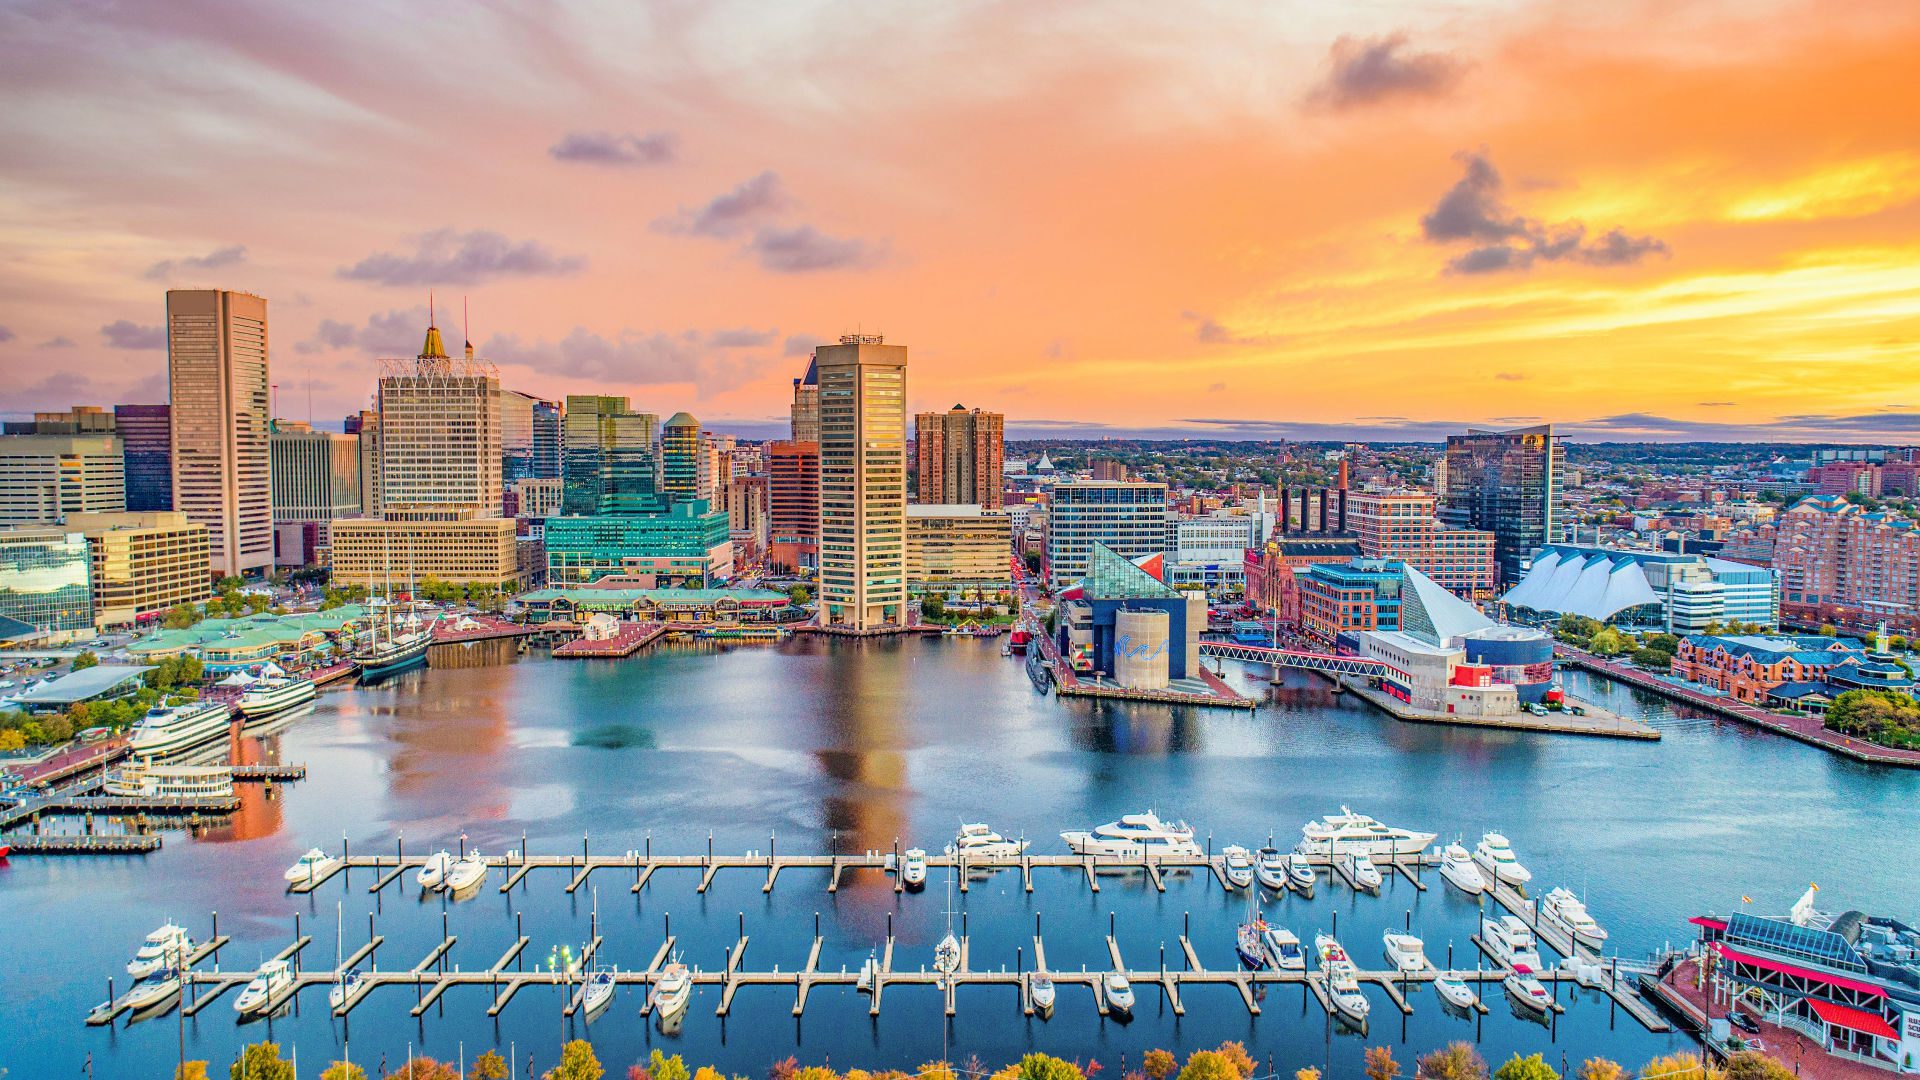 Baltimore's inner harbor